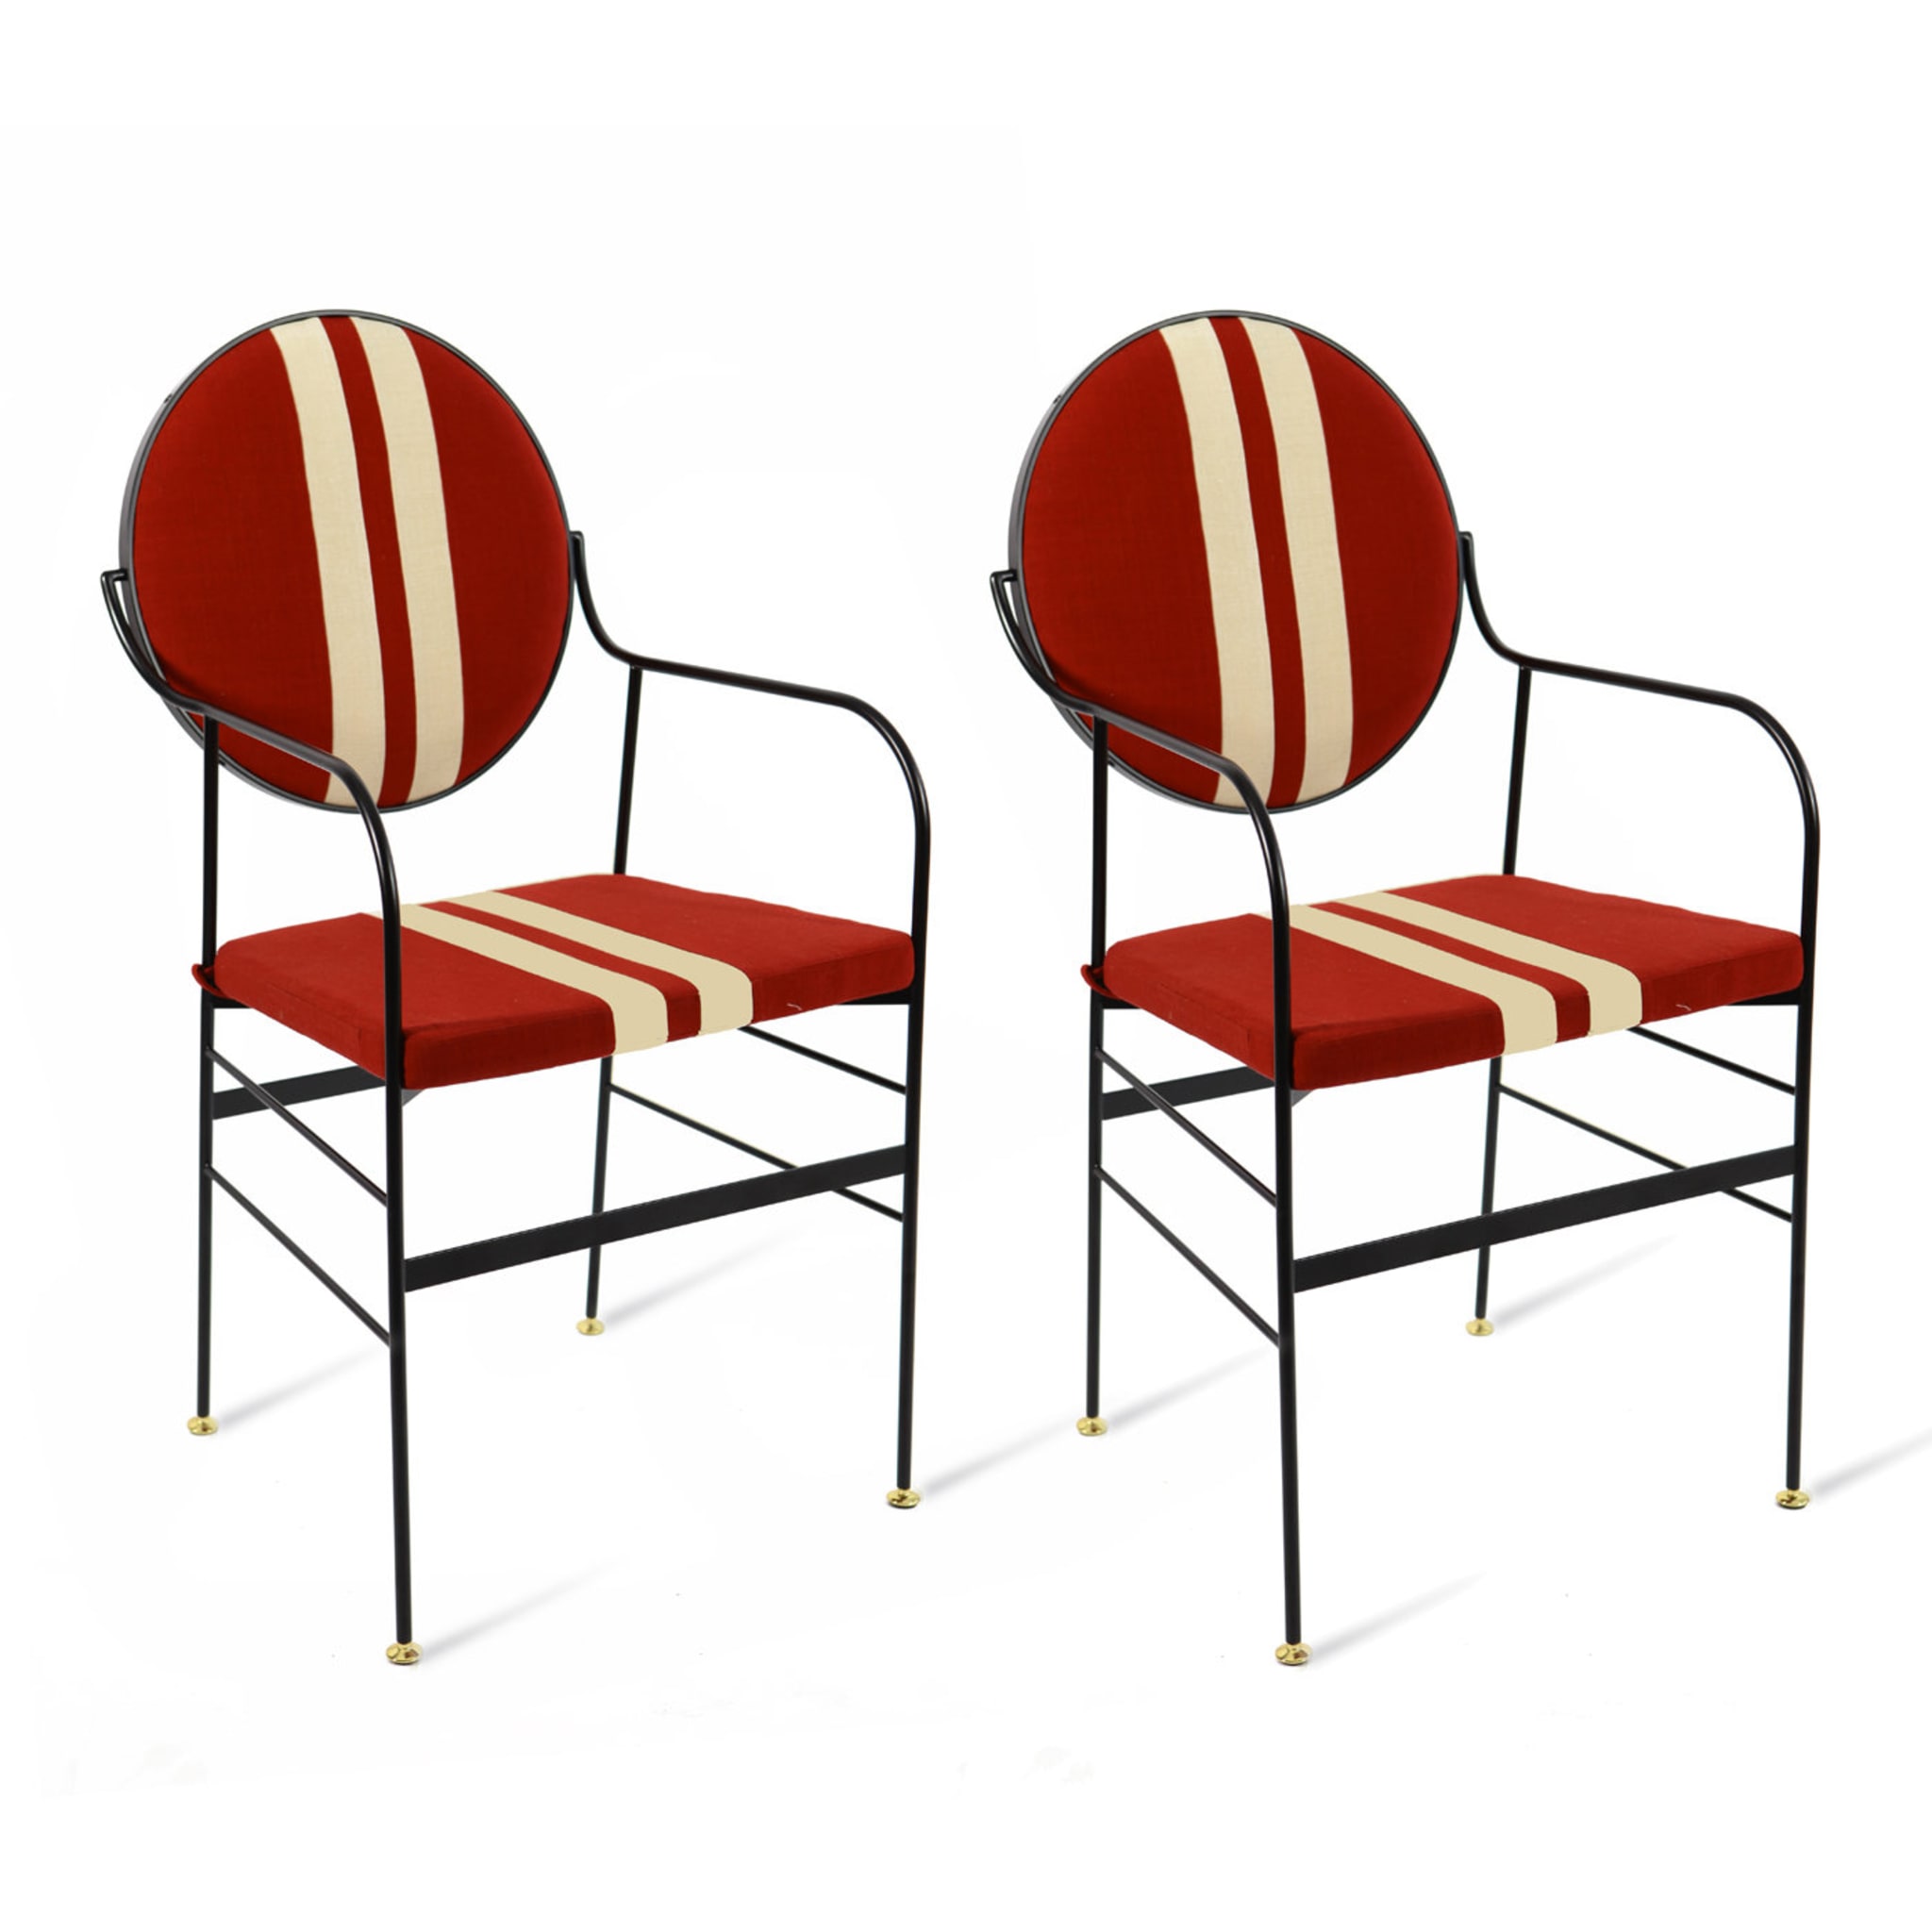 Set of 2 Luigina Red Sport Chair - Alternative view 4